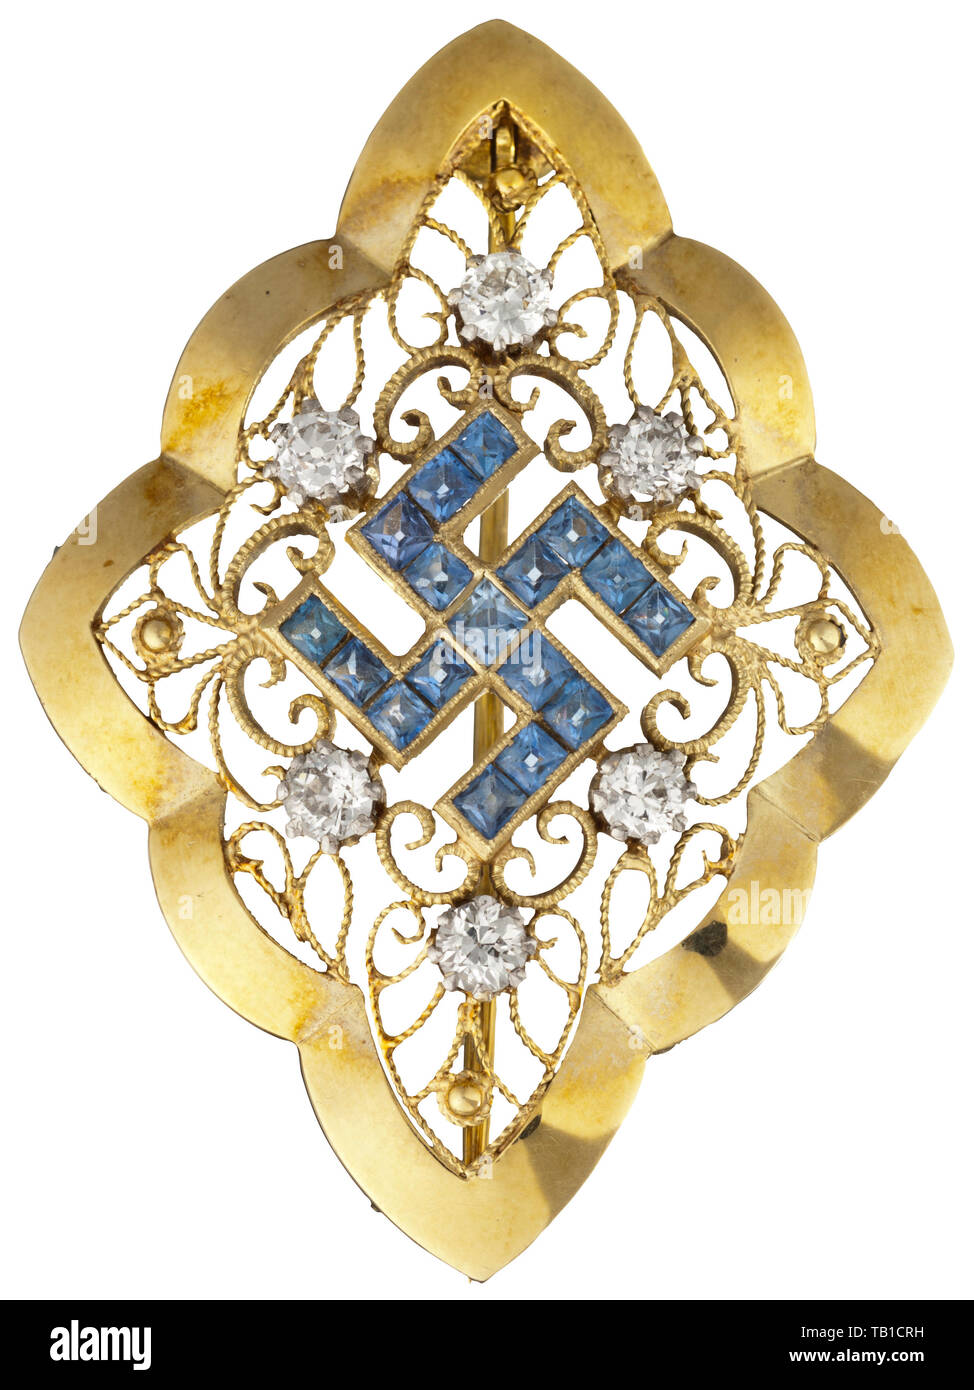 Emmy Göring - une broche en or avec saphirs et diamants taille courbée, sous forme de pastille, situé dans le centre d'une croix gammée en filigrane d'or avec 17 saphirs bleu clair, entouré de six diamants. Marque '585' à l'arrière. Axe avec fermeture de sécurité. Dimensions 42 x 30 mm, Poids 7,5 g. Cf. Hermann Historica, 45e vente aux enchères, lot 6502, vendue pour 2 100 euros. 20e siècle, années 1930, NS, le National-socialisme, le Nazisme, Troisième Reich, l'Empire allemand, l'Allemagne, l'allemand, Parti national-socialiste, Nazi, période nazie, le fascisme, historique, historique, Editorial-Use-seulement Banque D'Images